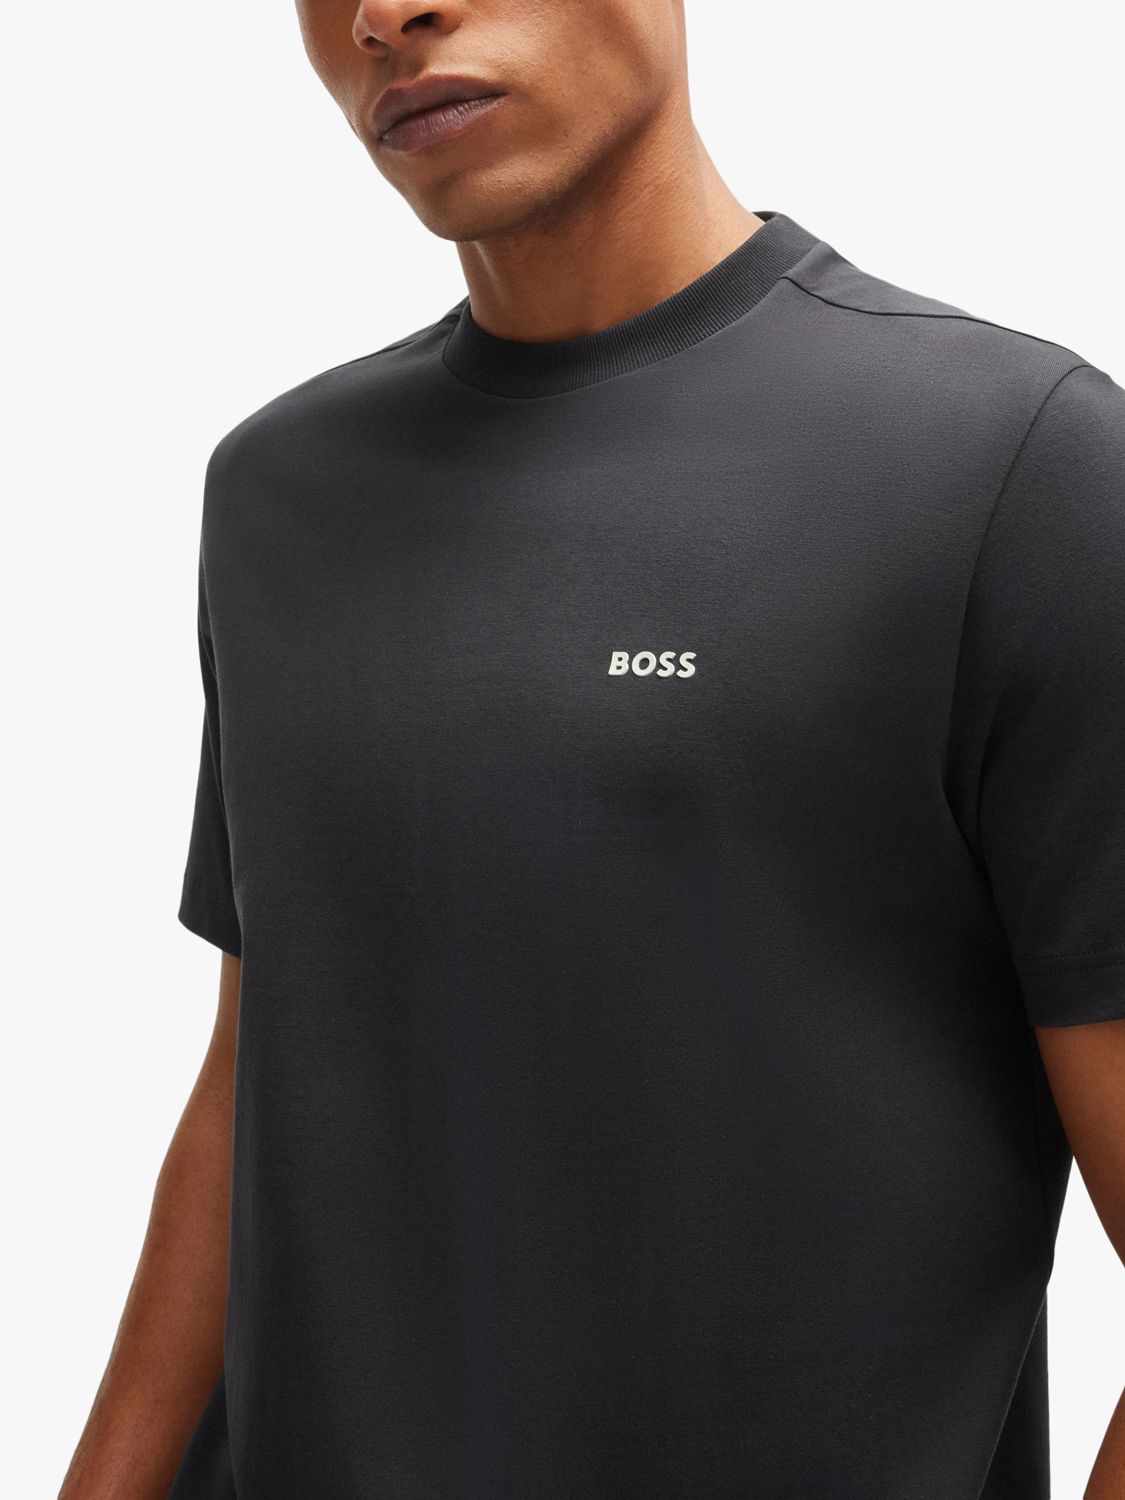 BOSS Essential Short Sleeve T-Shirt, Charcoal, XL